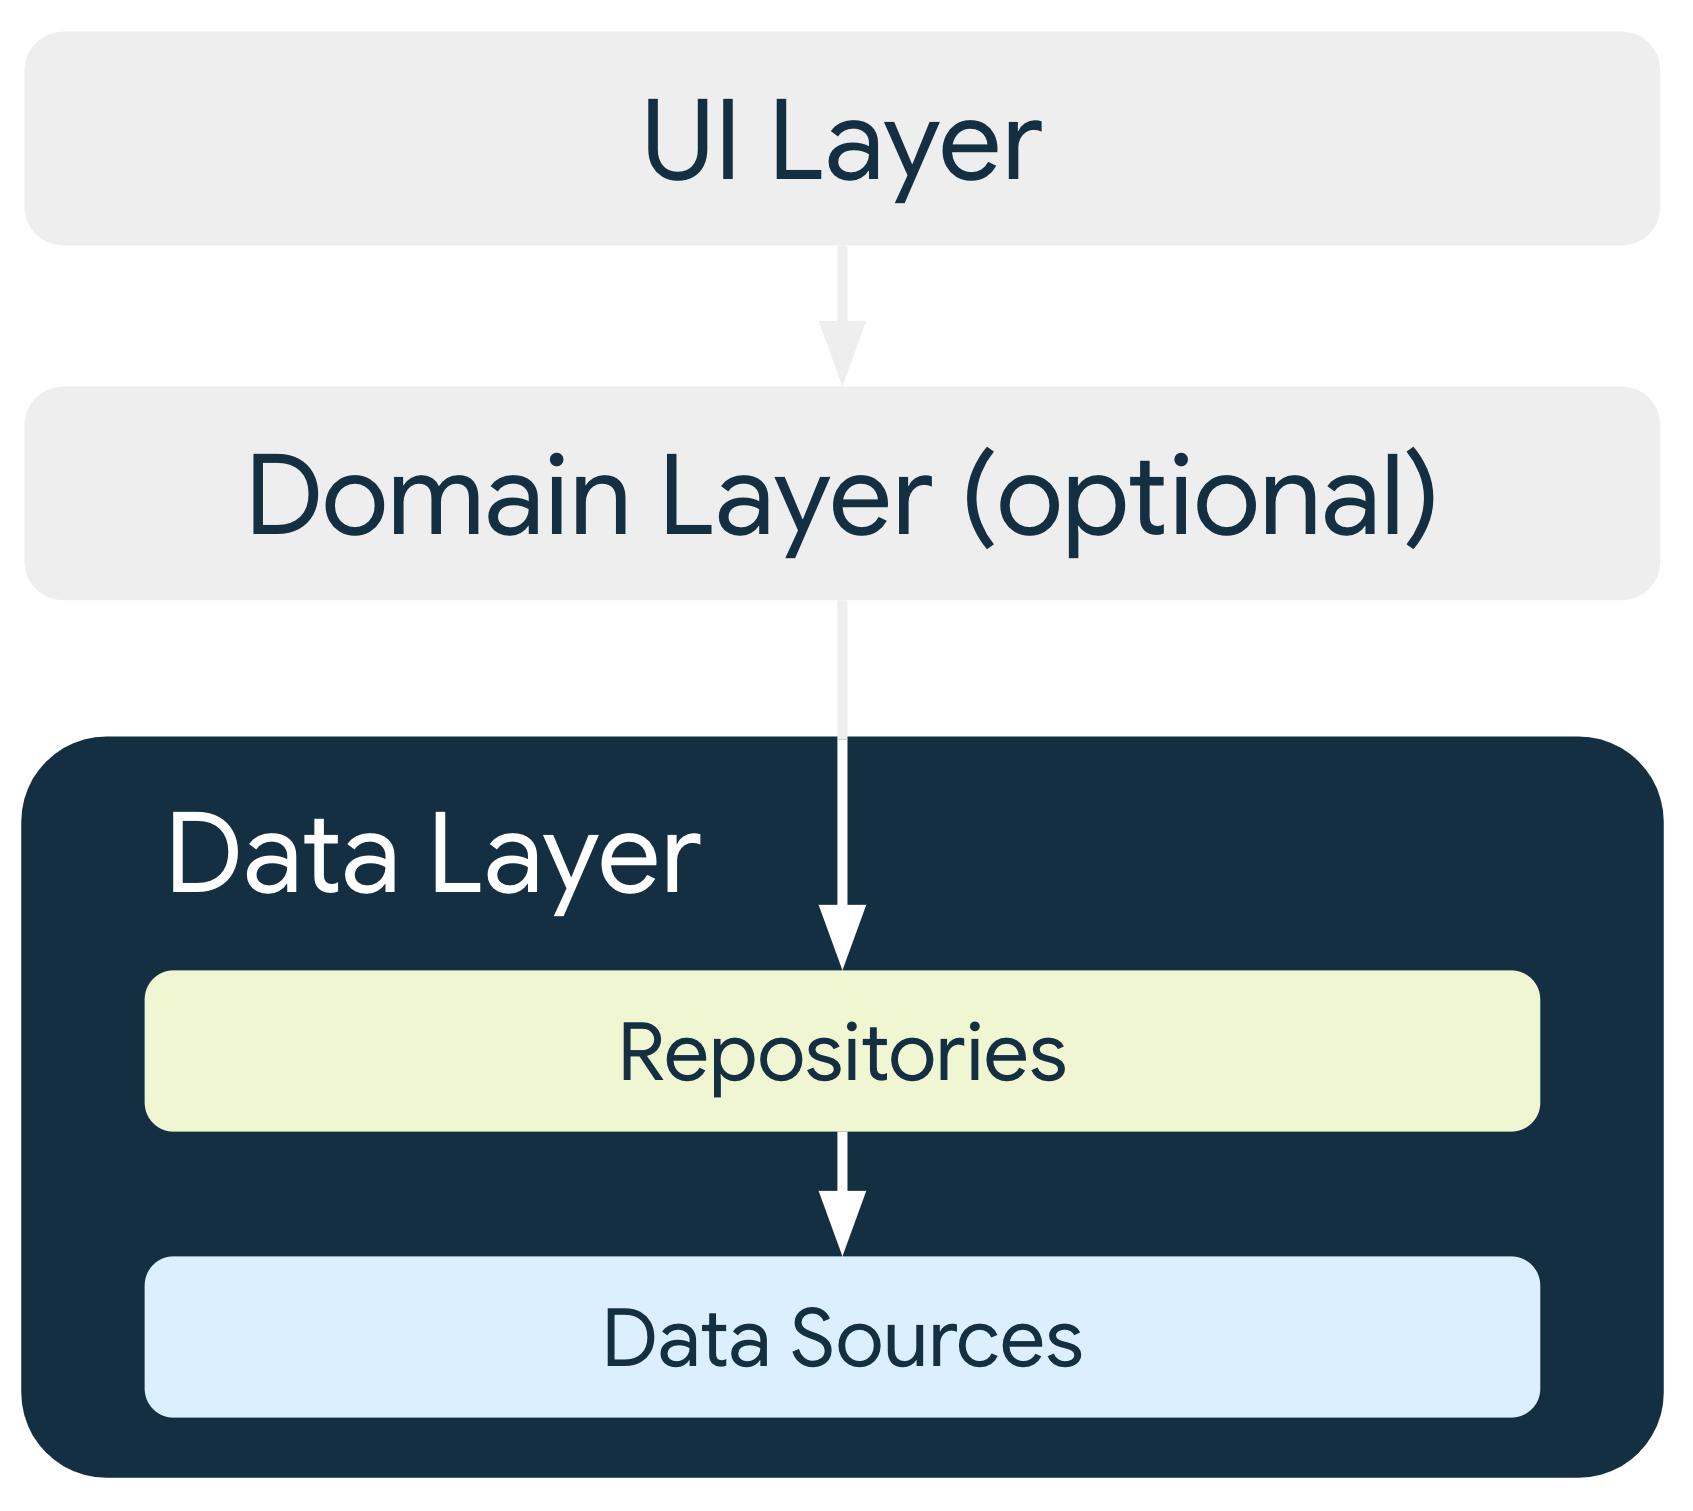 在典型架构中，数据层的代码库会向应用的其余部分提供数据，而这些代码库则依赖于数据源。